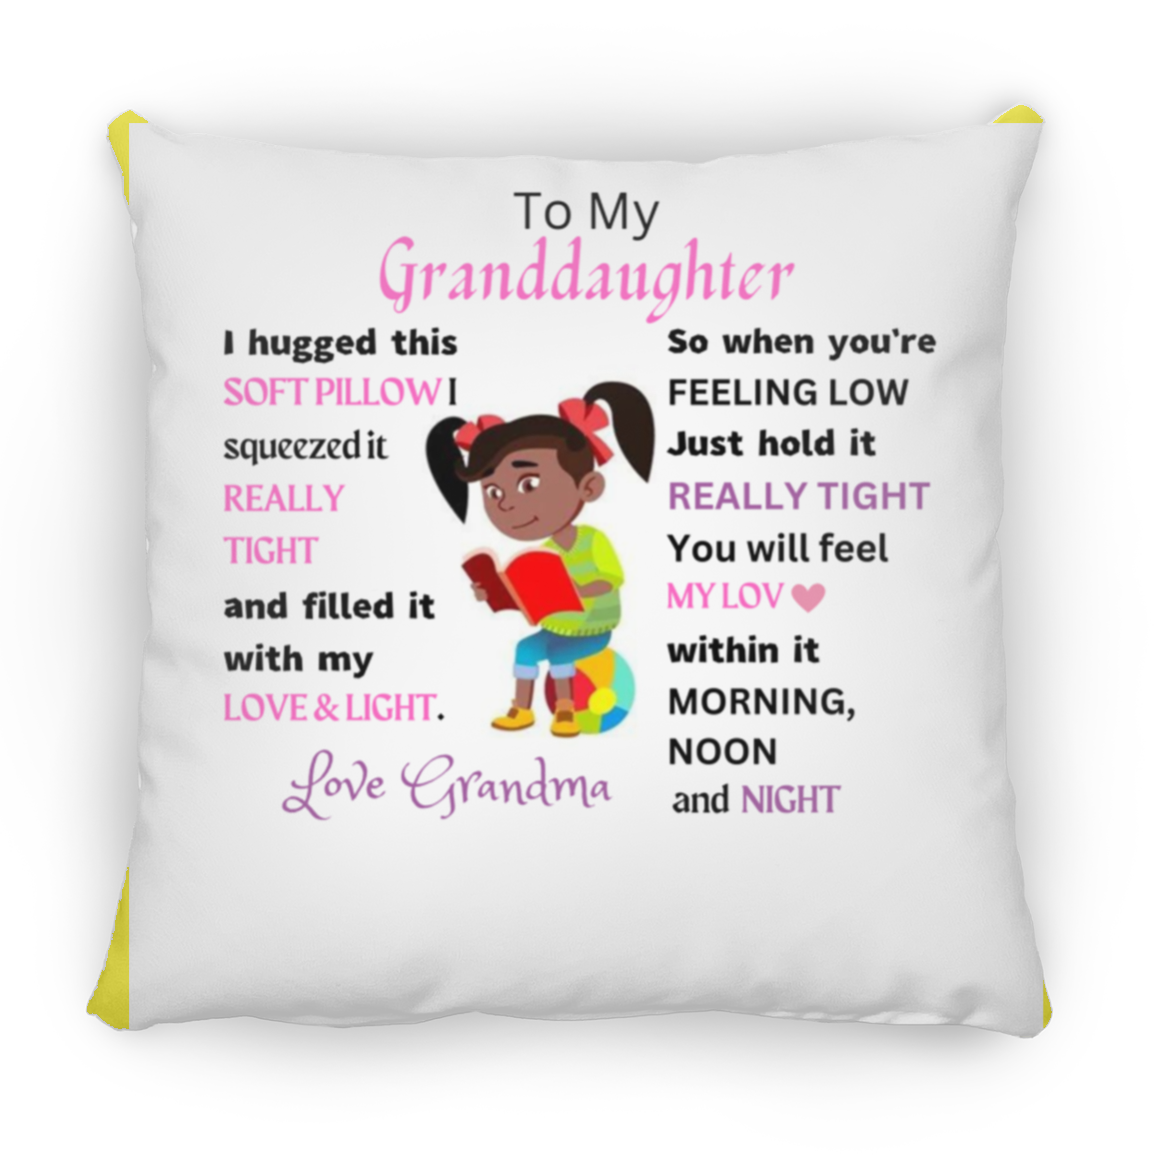 Granddaughter From Grandma Medium Square Pillow. Children Room Decorative pillow / Black children girls bedroom pillows / baby girl room decor / little melanin queen